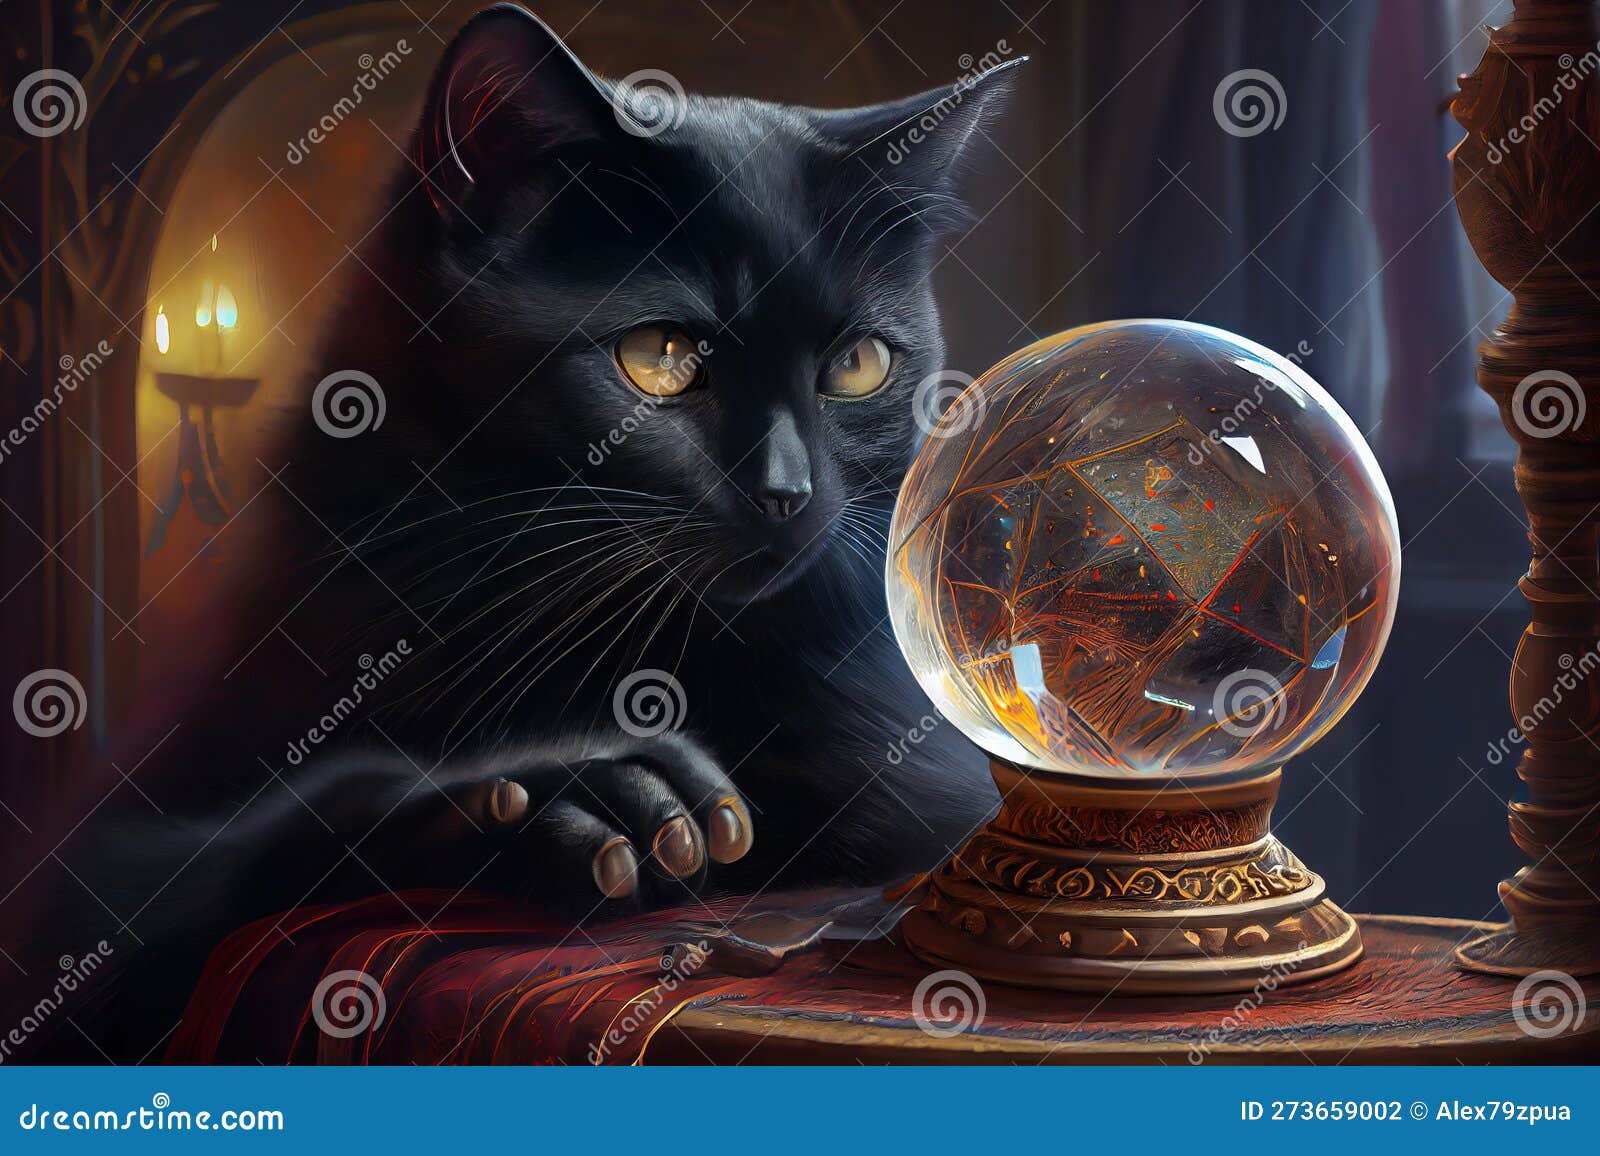 Gato gatinho mágico bola de cristal colocado base expositor globo